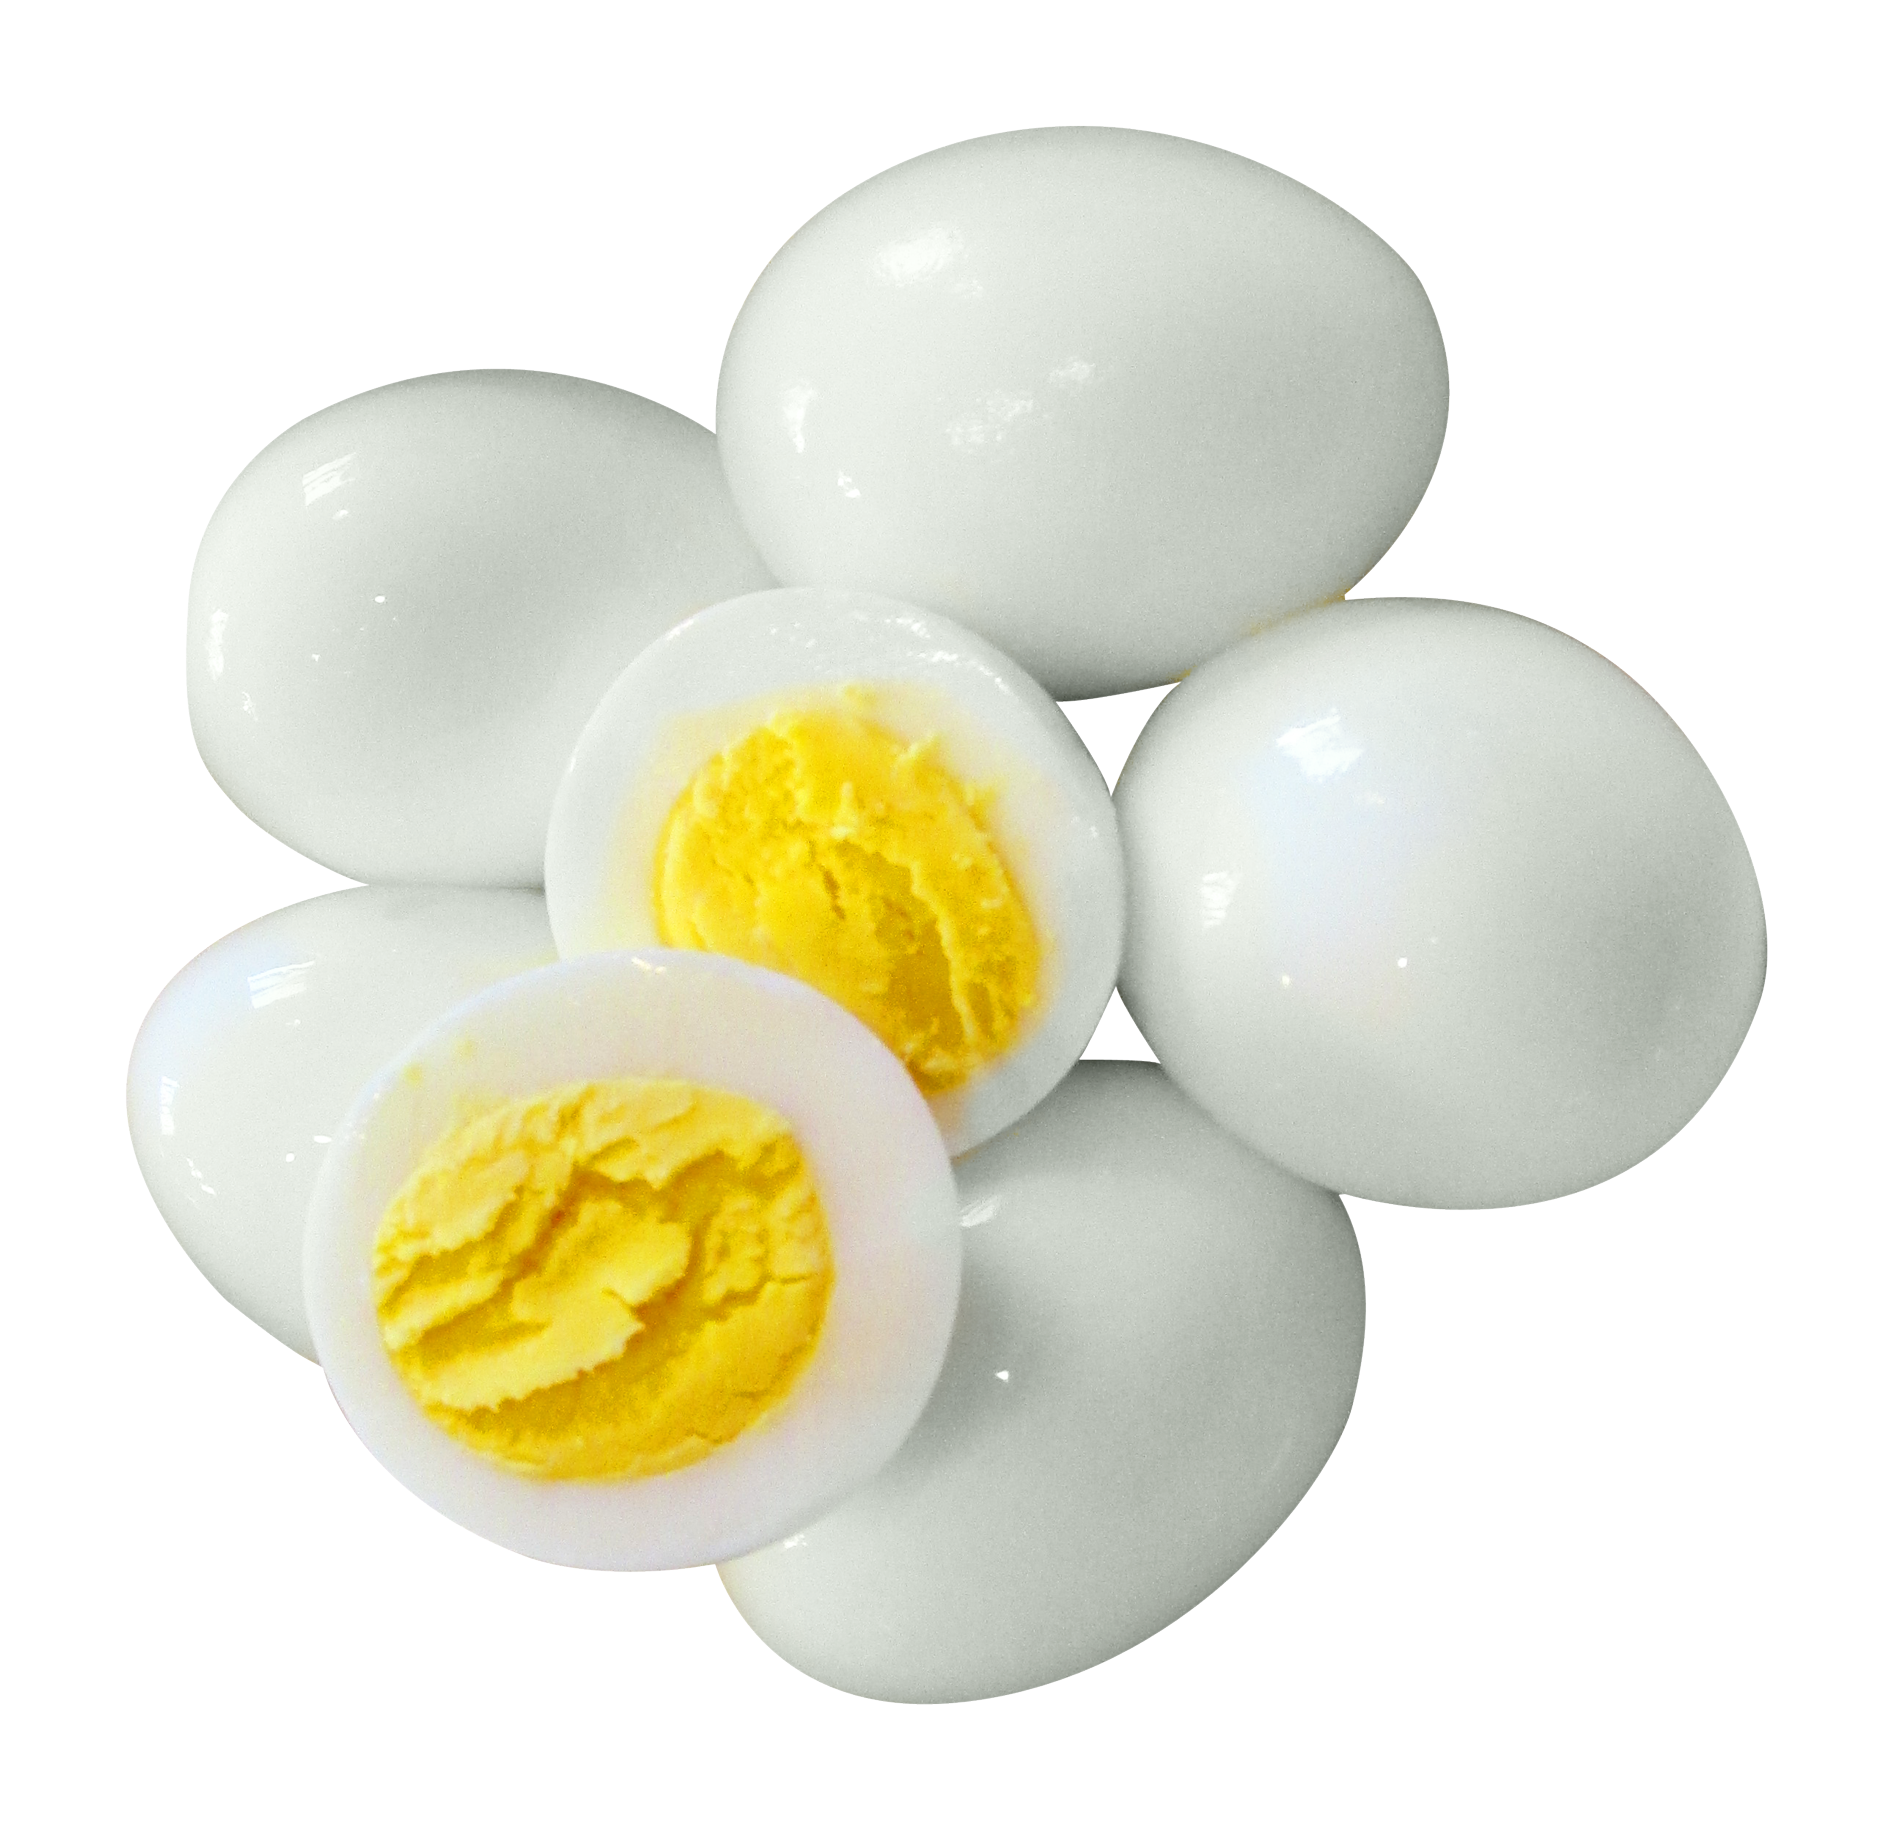 Отварной куриный белок. Вареные яйца. Яйцо отварное. Яйцо куриное вареное. Яйца вкрутую.